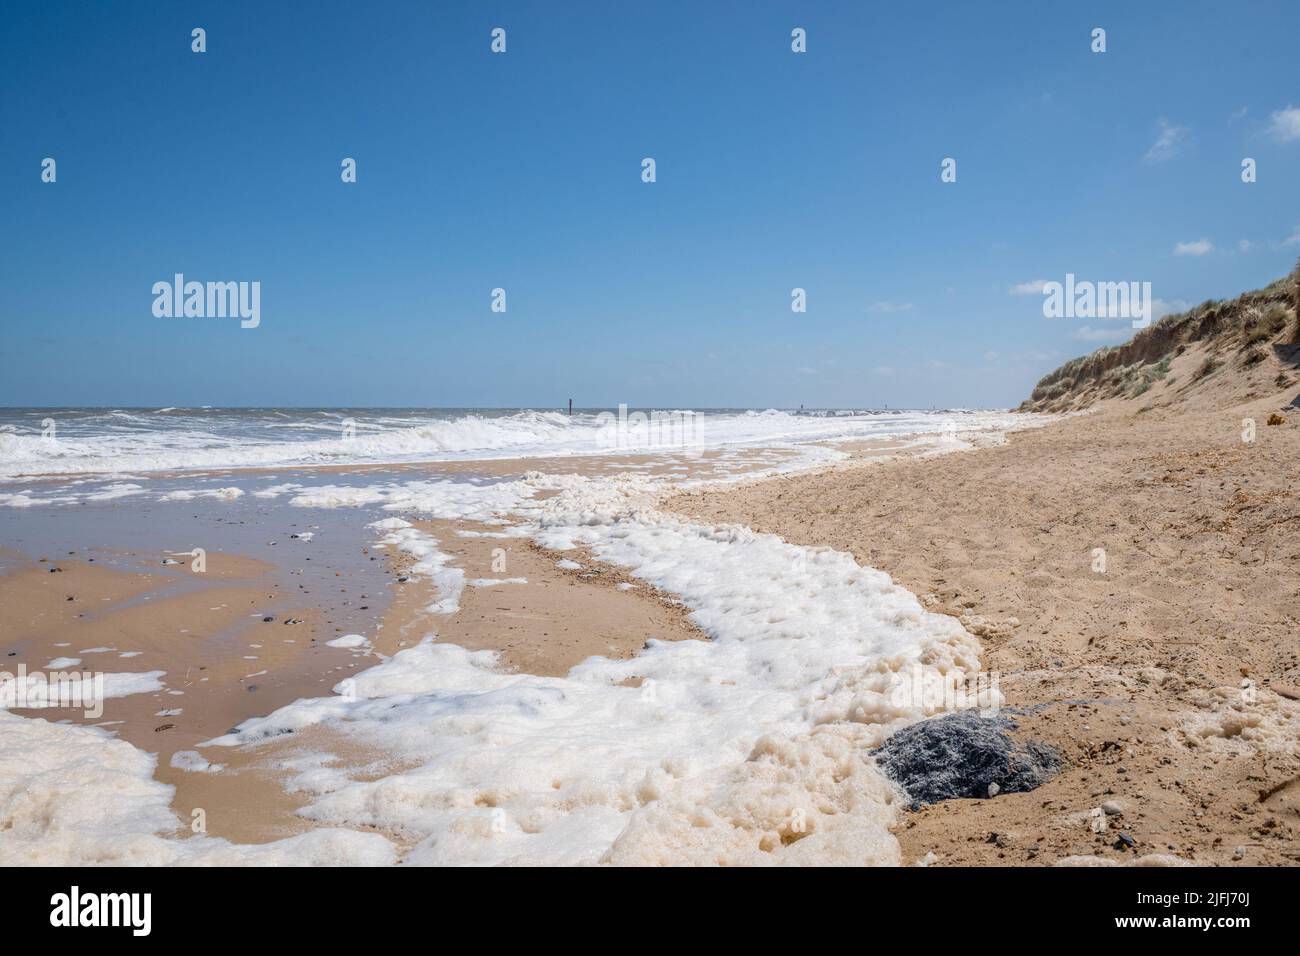 Schiuma di mare, schiuma di mare, schiuma di spiaggia, o spume è un tipo di schiuma creata dall'agitazione di acqua di mare, sulla spiaggia a Horsey, Norfolk, Inghilterra. Foto Stock